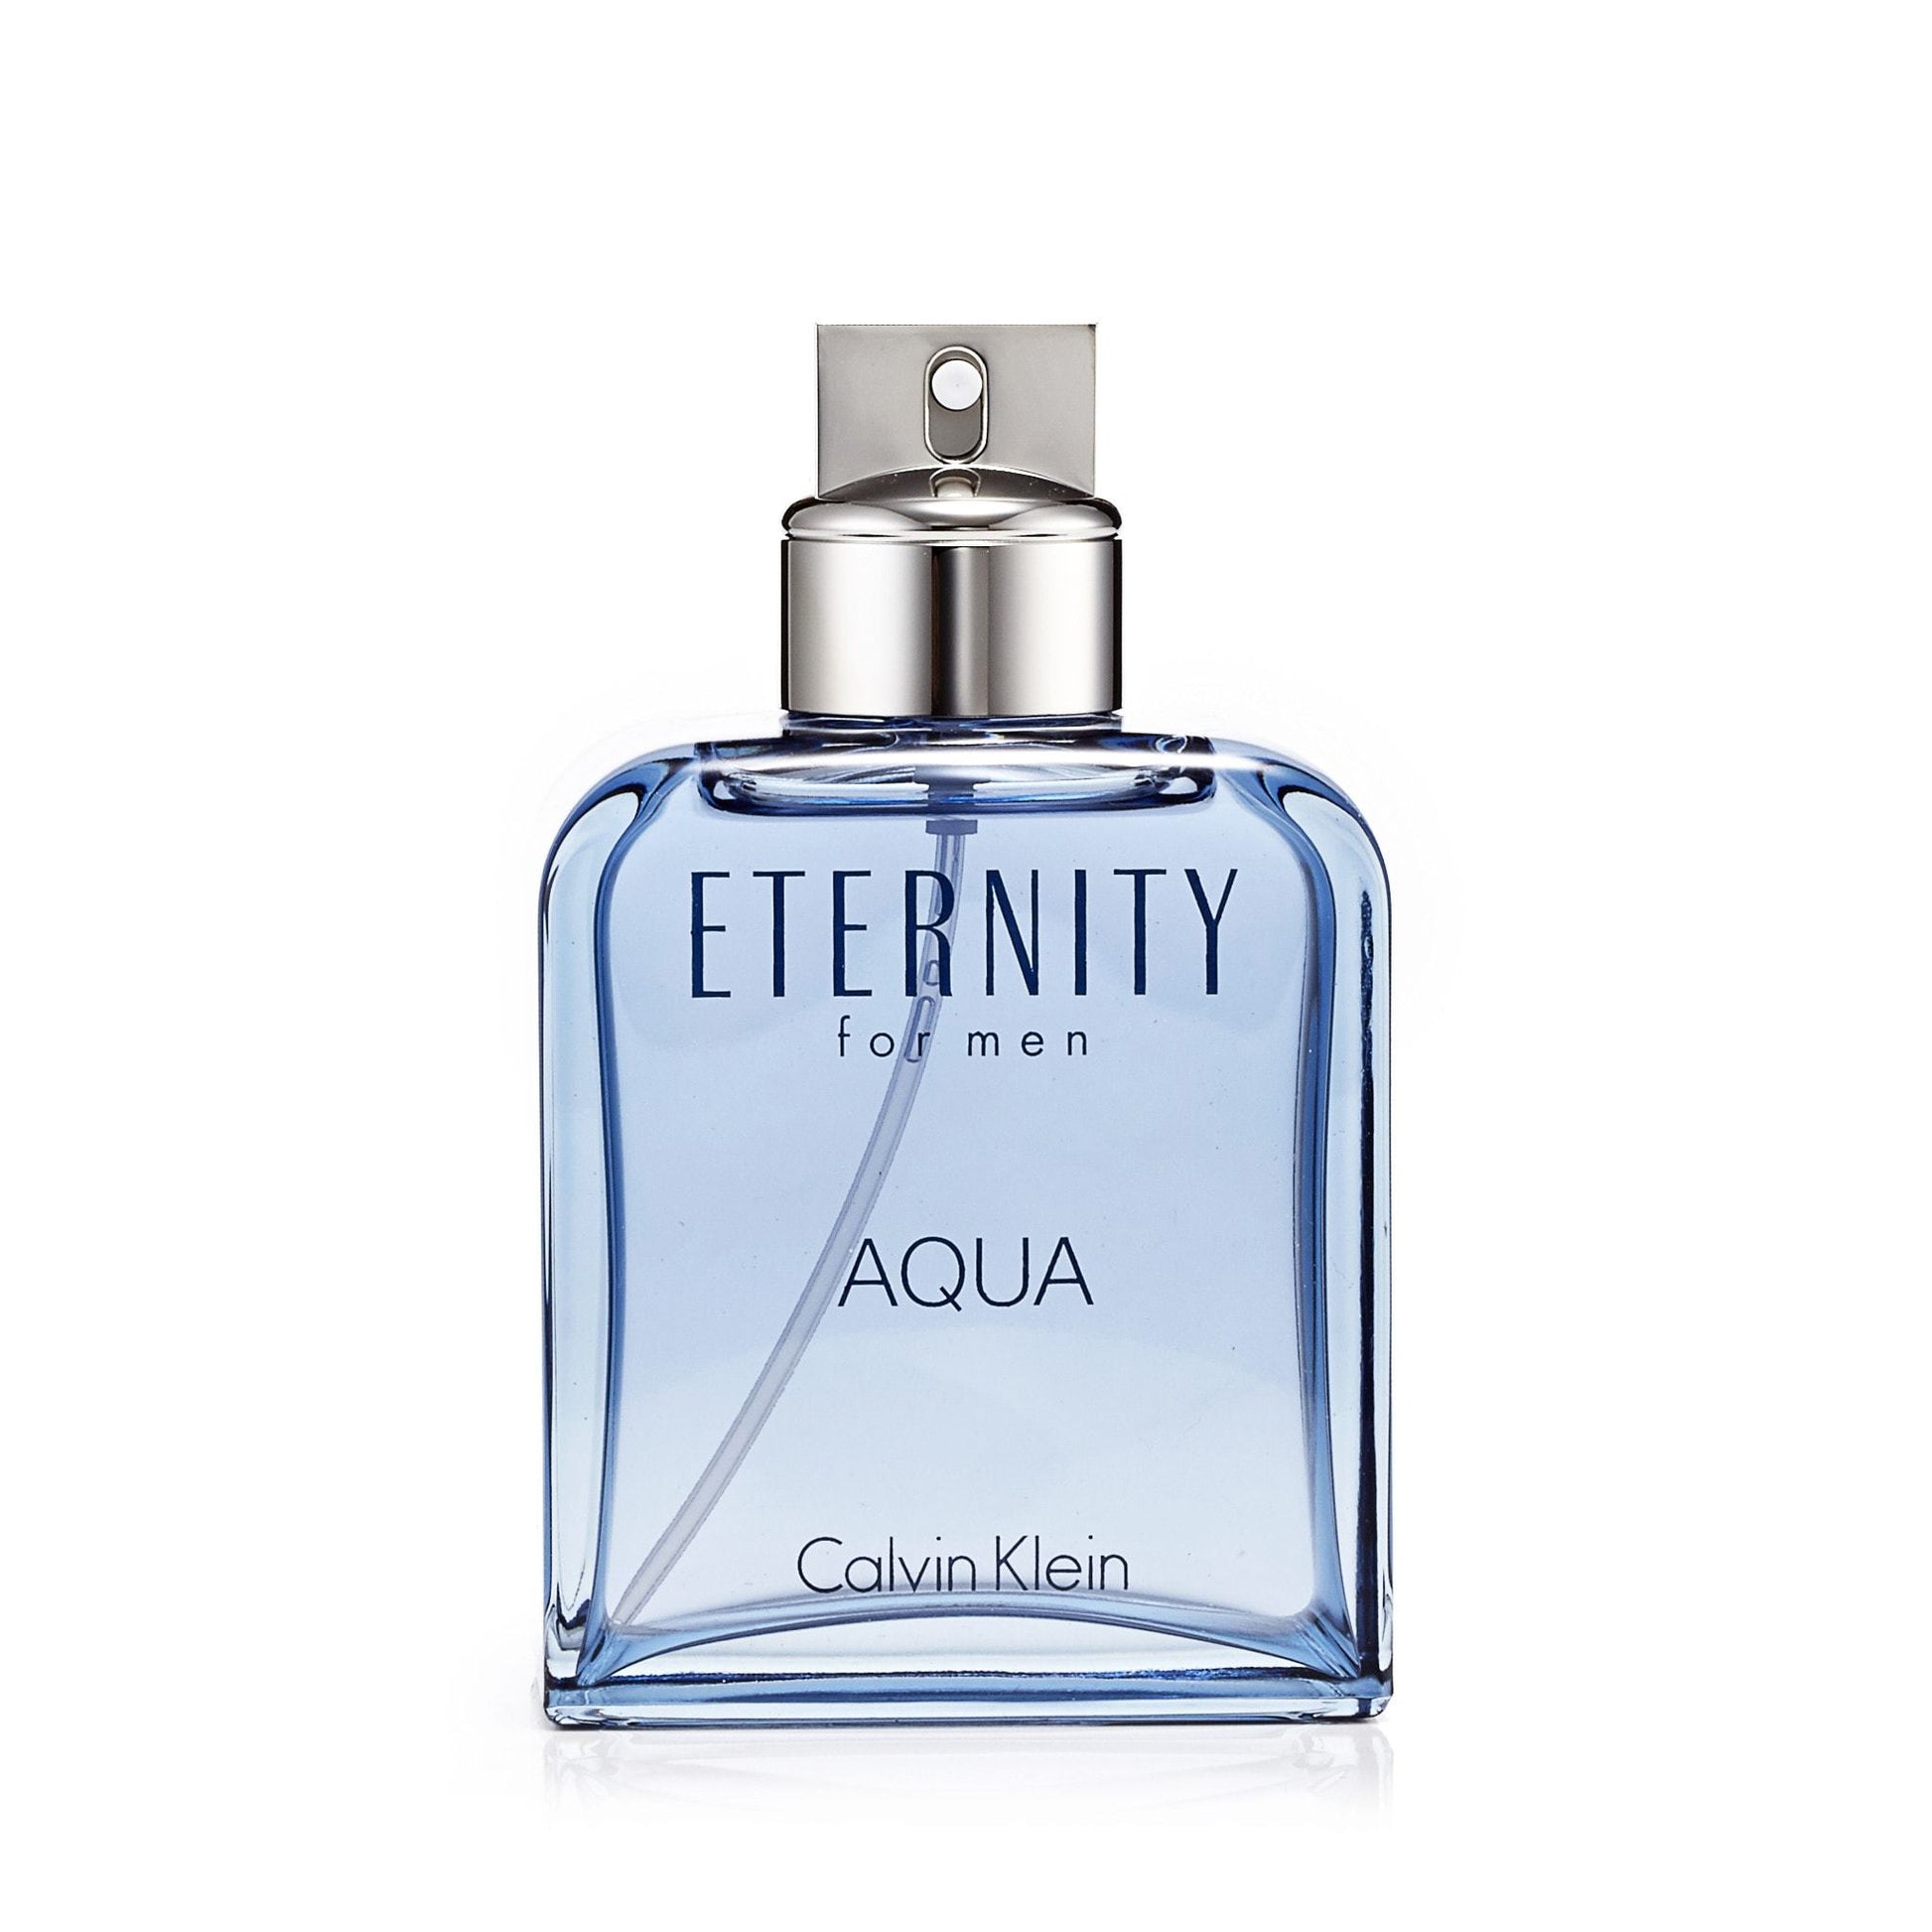 Eternity Aqua Eau de Toilette Spray for Men by Calvin Klein, Product image 2